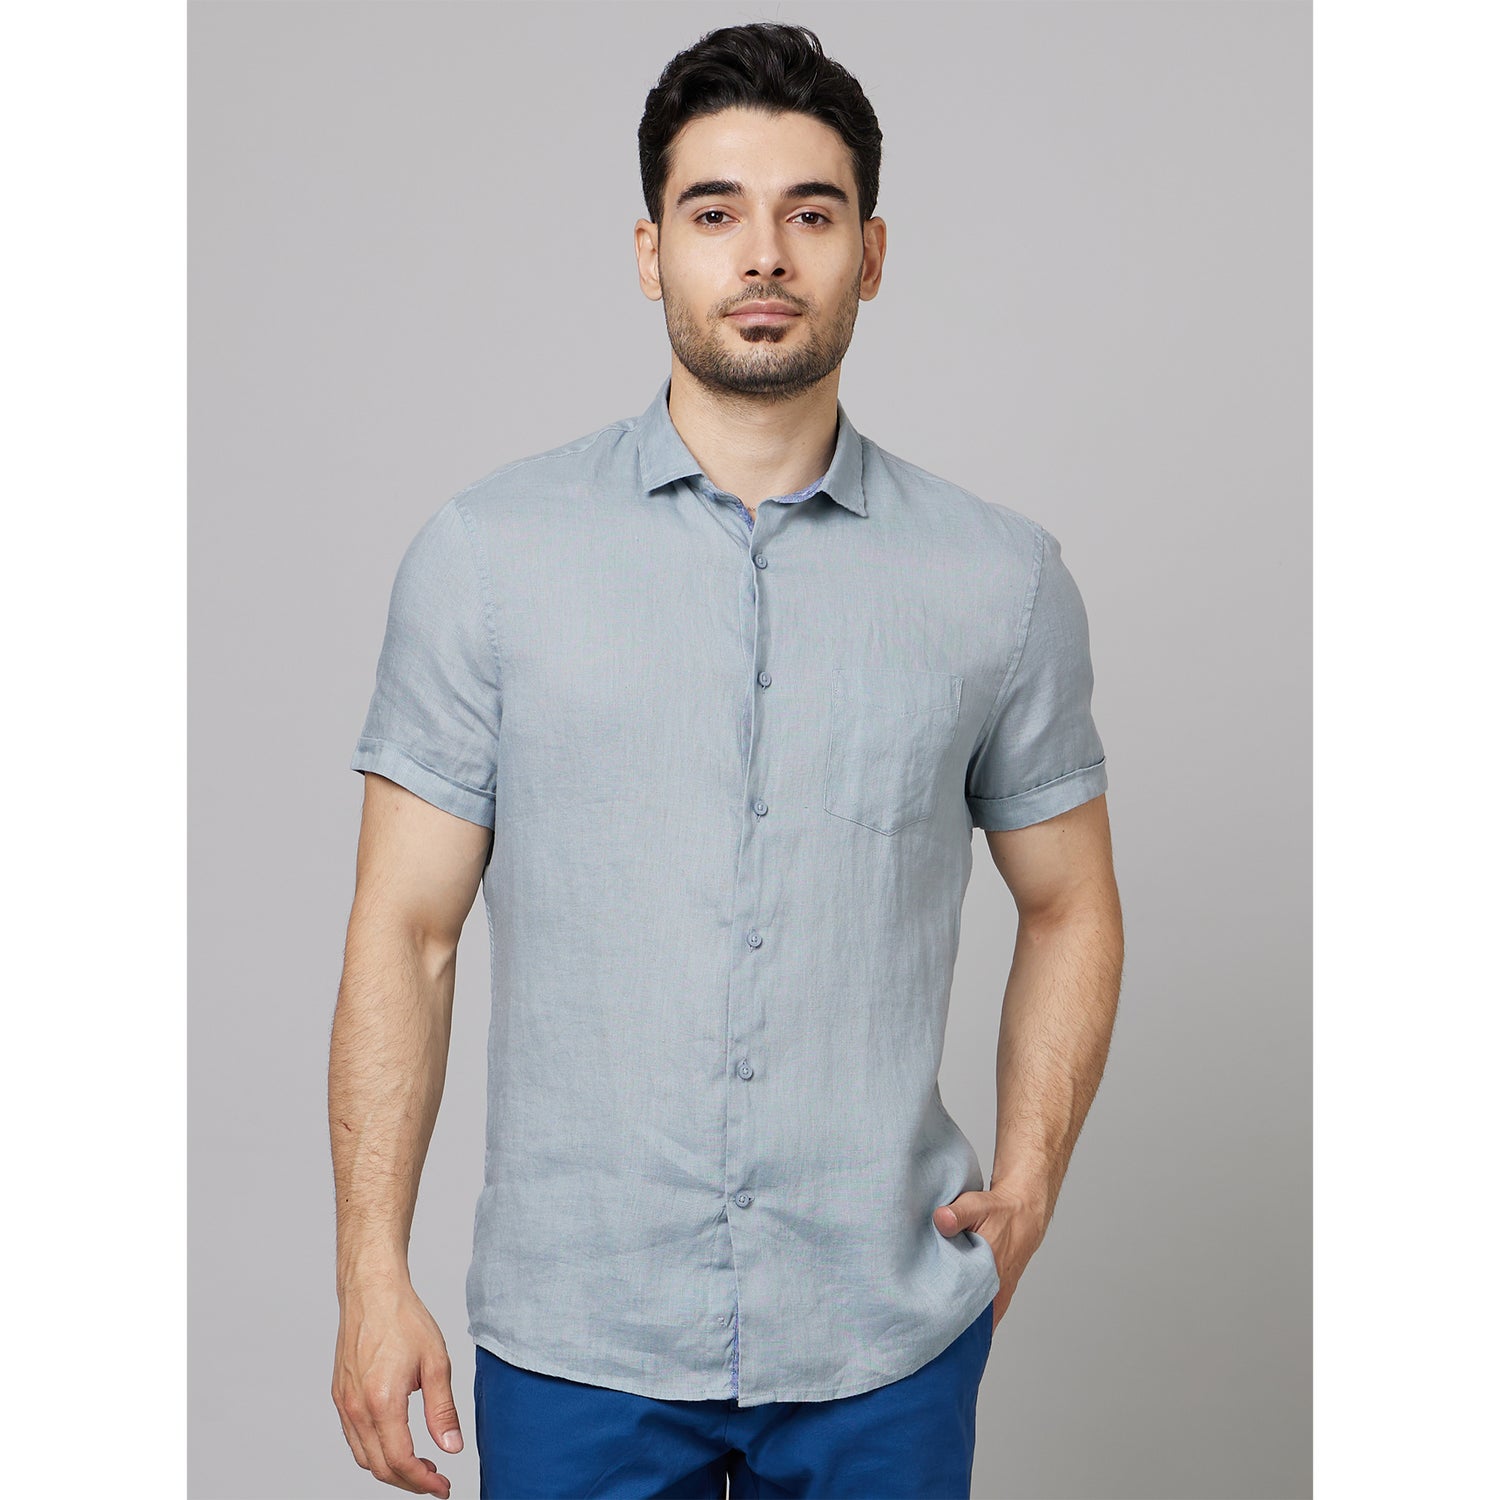 Grey Classic Short Sleeves Linen Casual Shirt (DACARAIN)